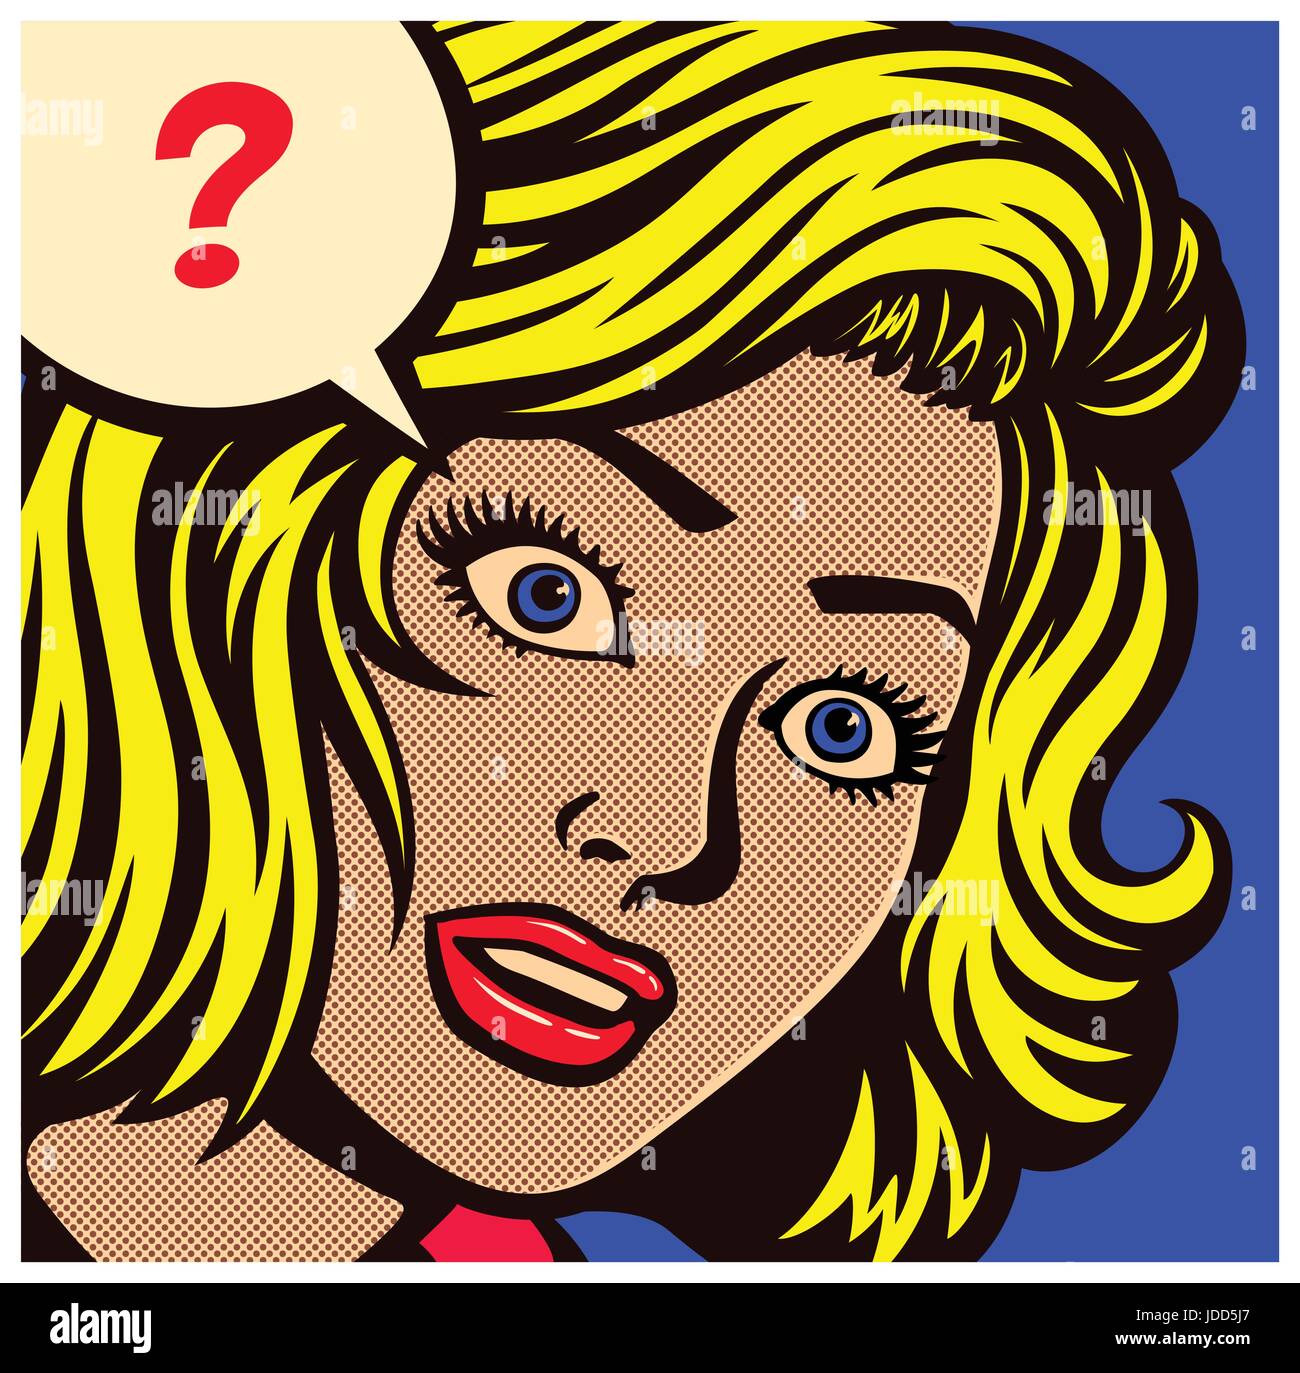 Pop Art Stil Comic panel mit verwirrt, ratlos oder verwirrten Frau und Sprechblase mit Fragezeichen Vektor poster Design Illustration Stock Vektor